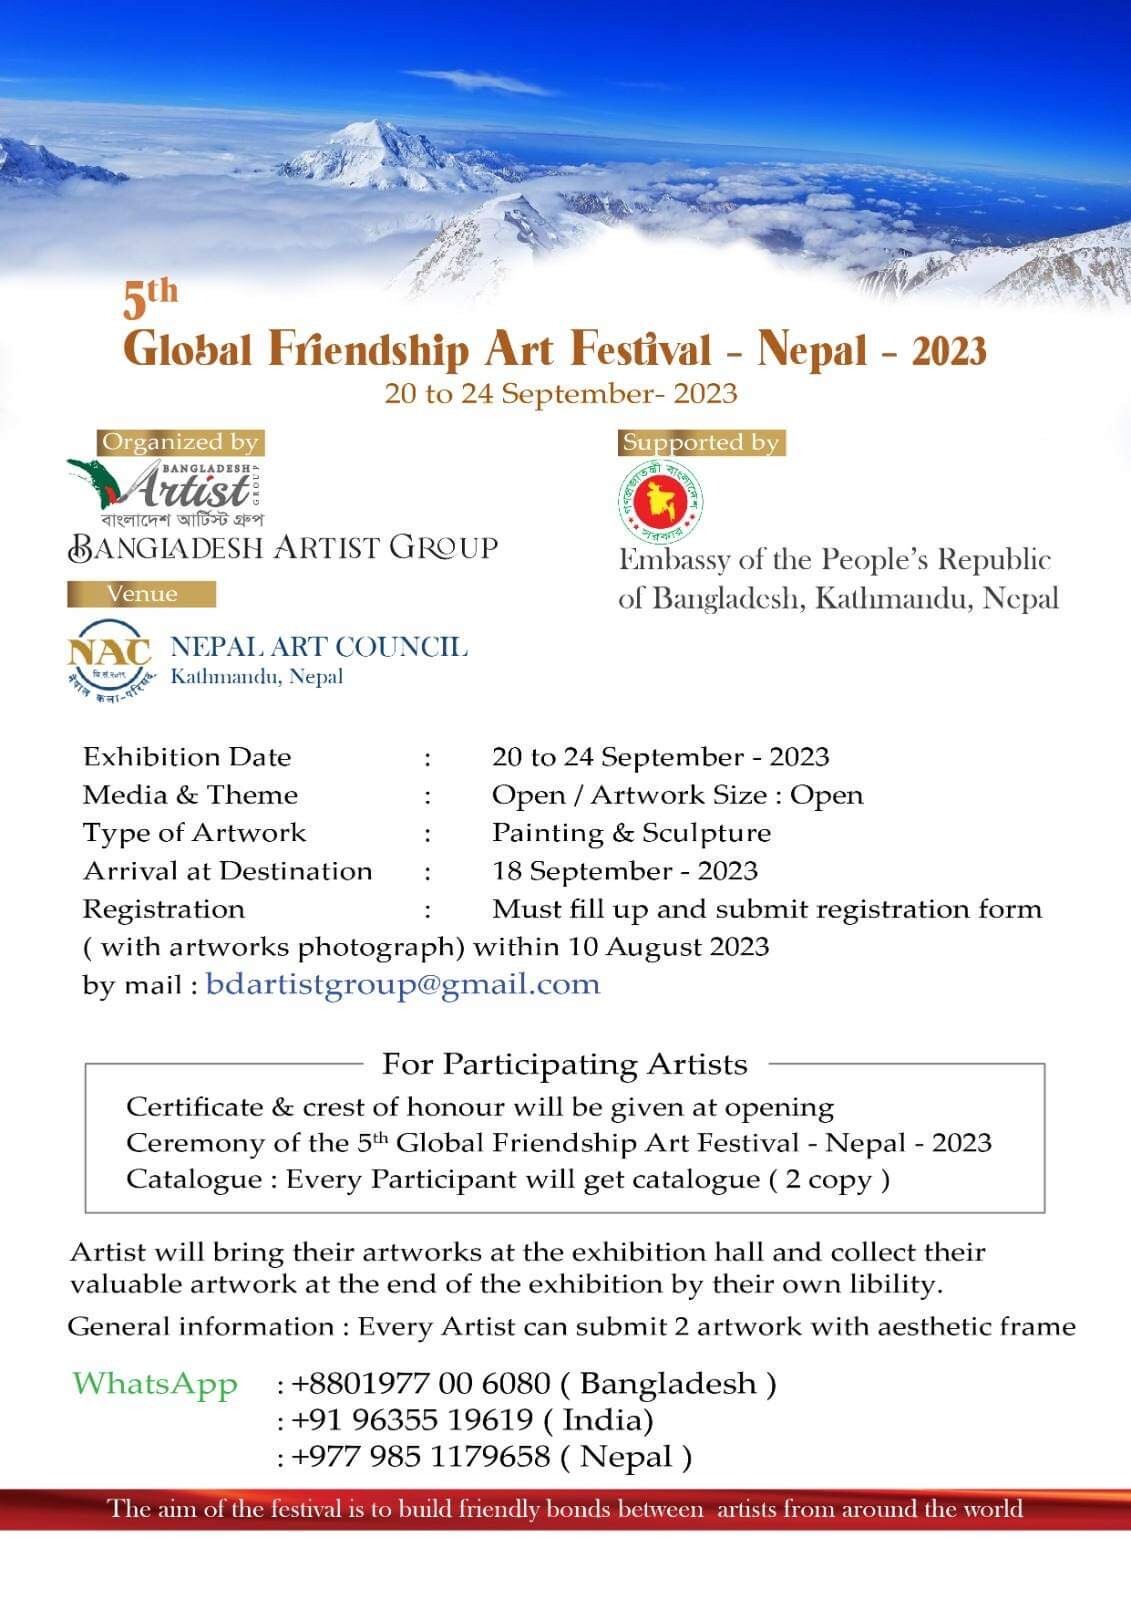 GLOBAL FRIENDSHIP ART FESTIVAL - NEPAL